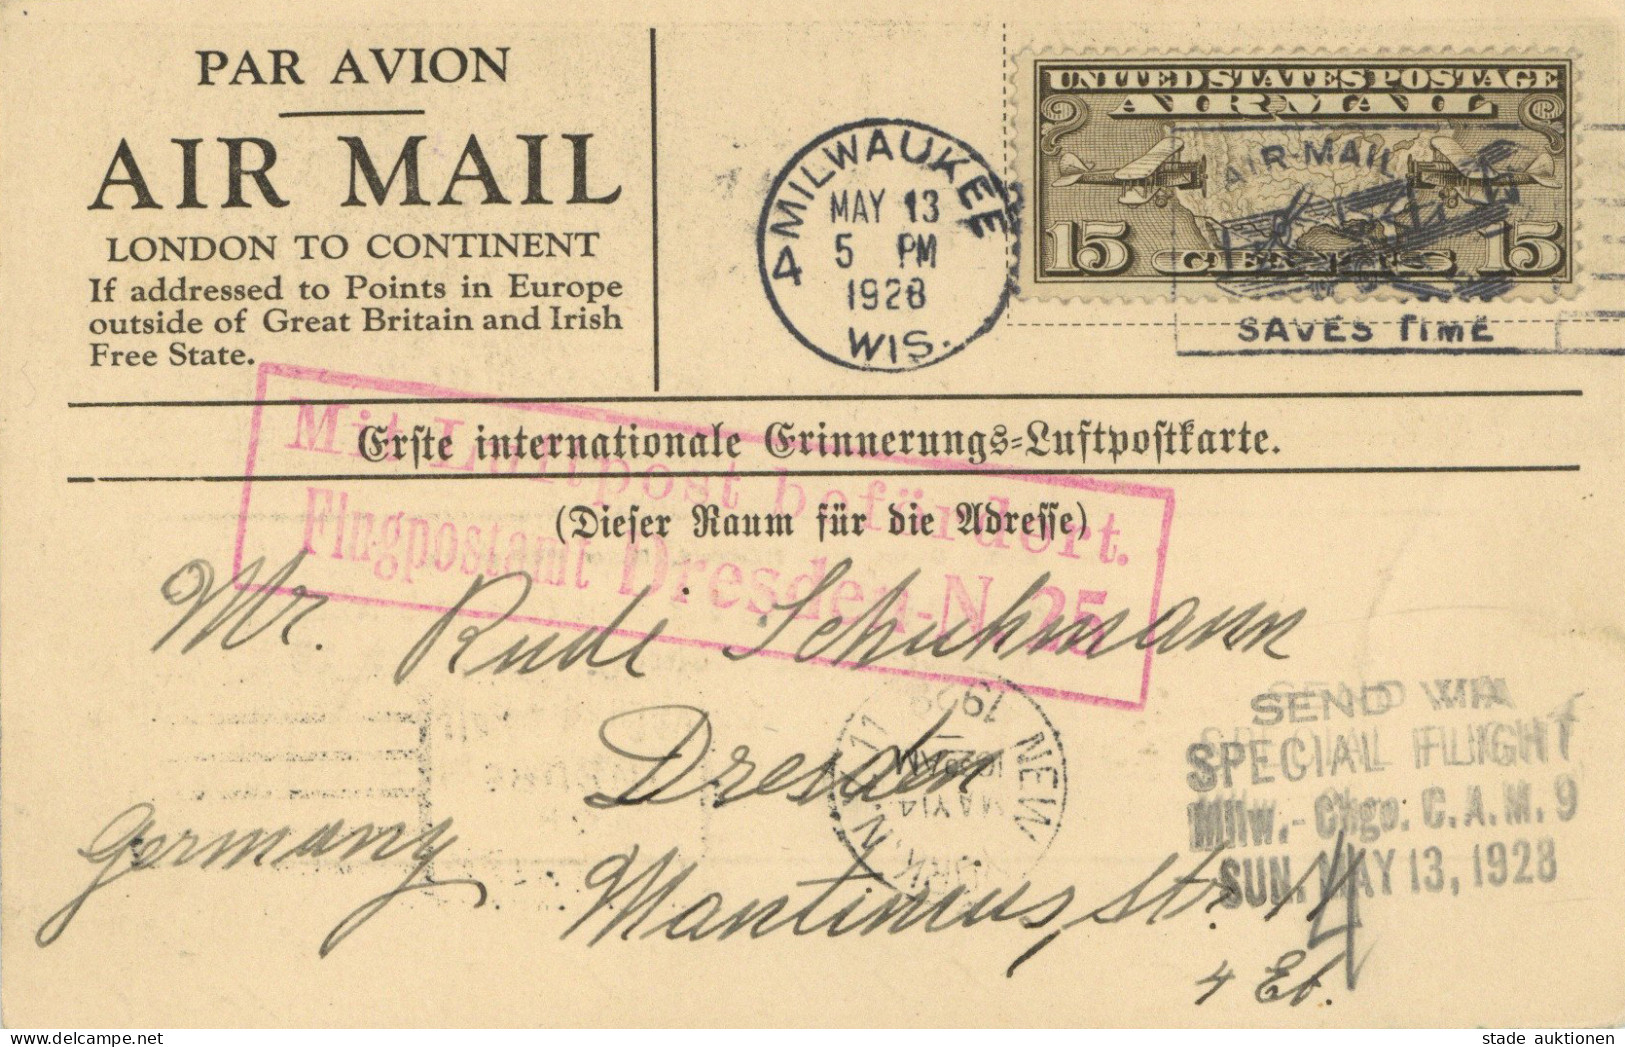 LUFTPOST Anlasskarte Hauptmann Köhl/Baron Von Hünefeld/Major Fitzmaurice Empfang Der Bremen-Flieger In Milwaukee 1928 I- - Zeppeline